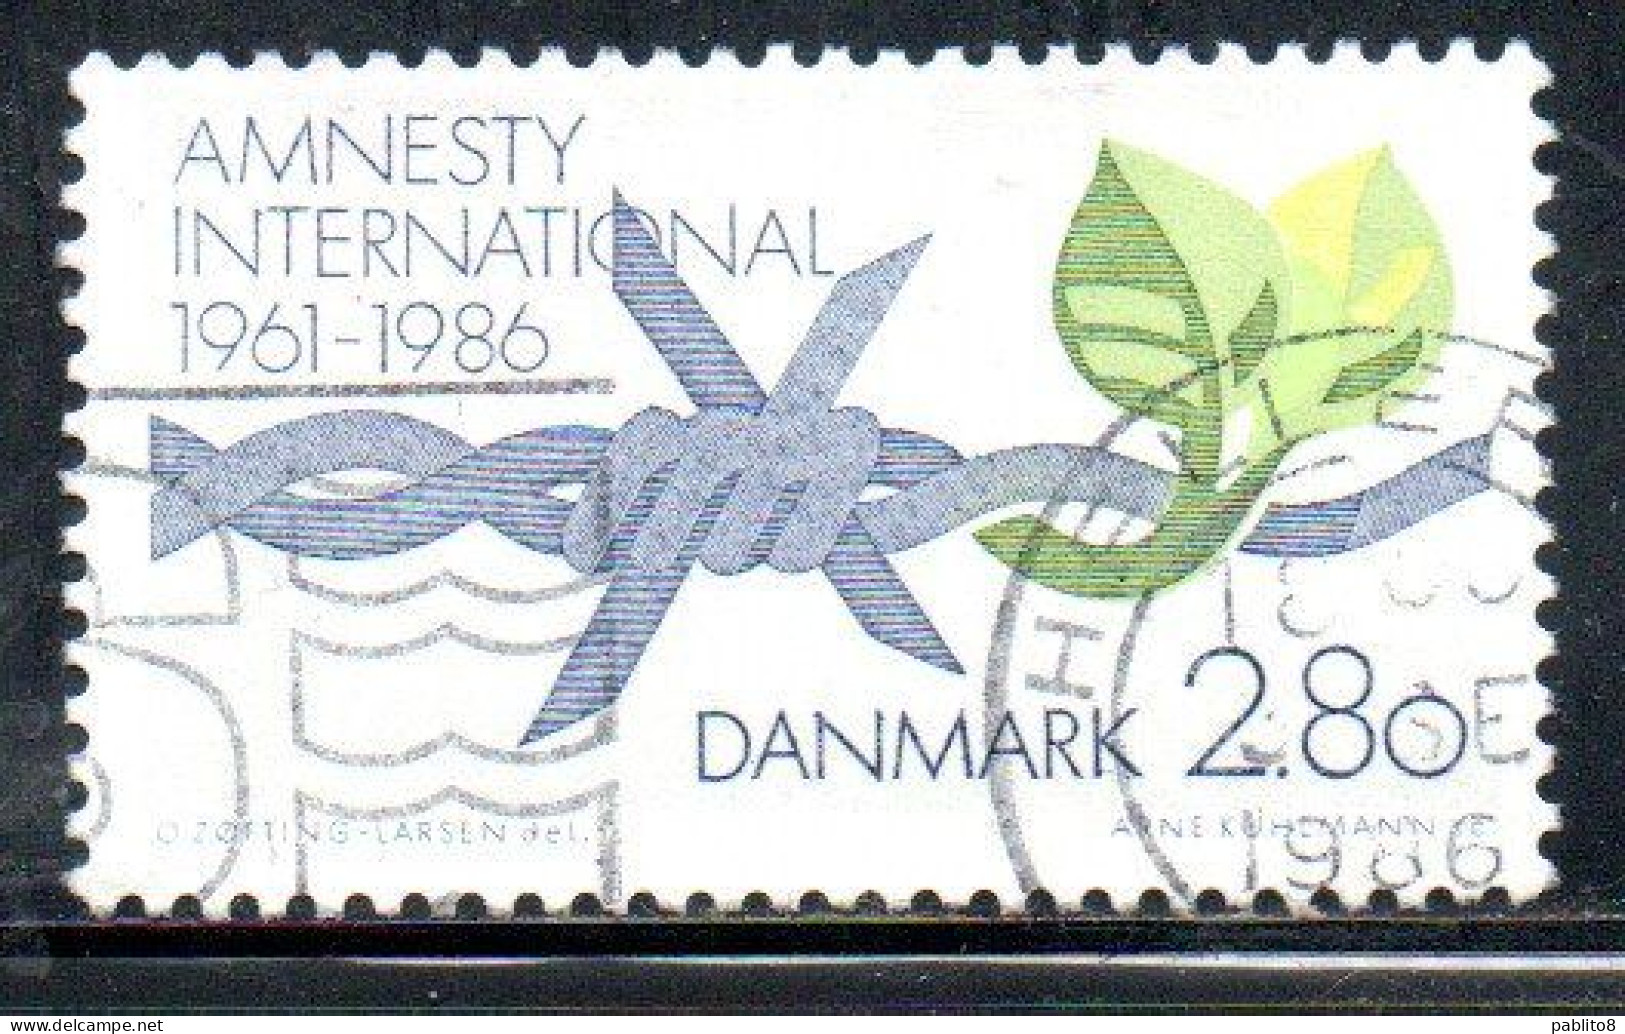 DANEMARK DANMARK DENMARK DANIMARCA 1986 AMNESTY INTERNATIONAL 2.80k USED USATO OBLITERE' - Oblitérés